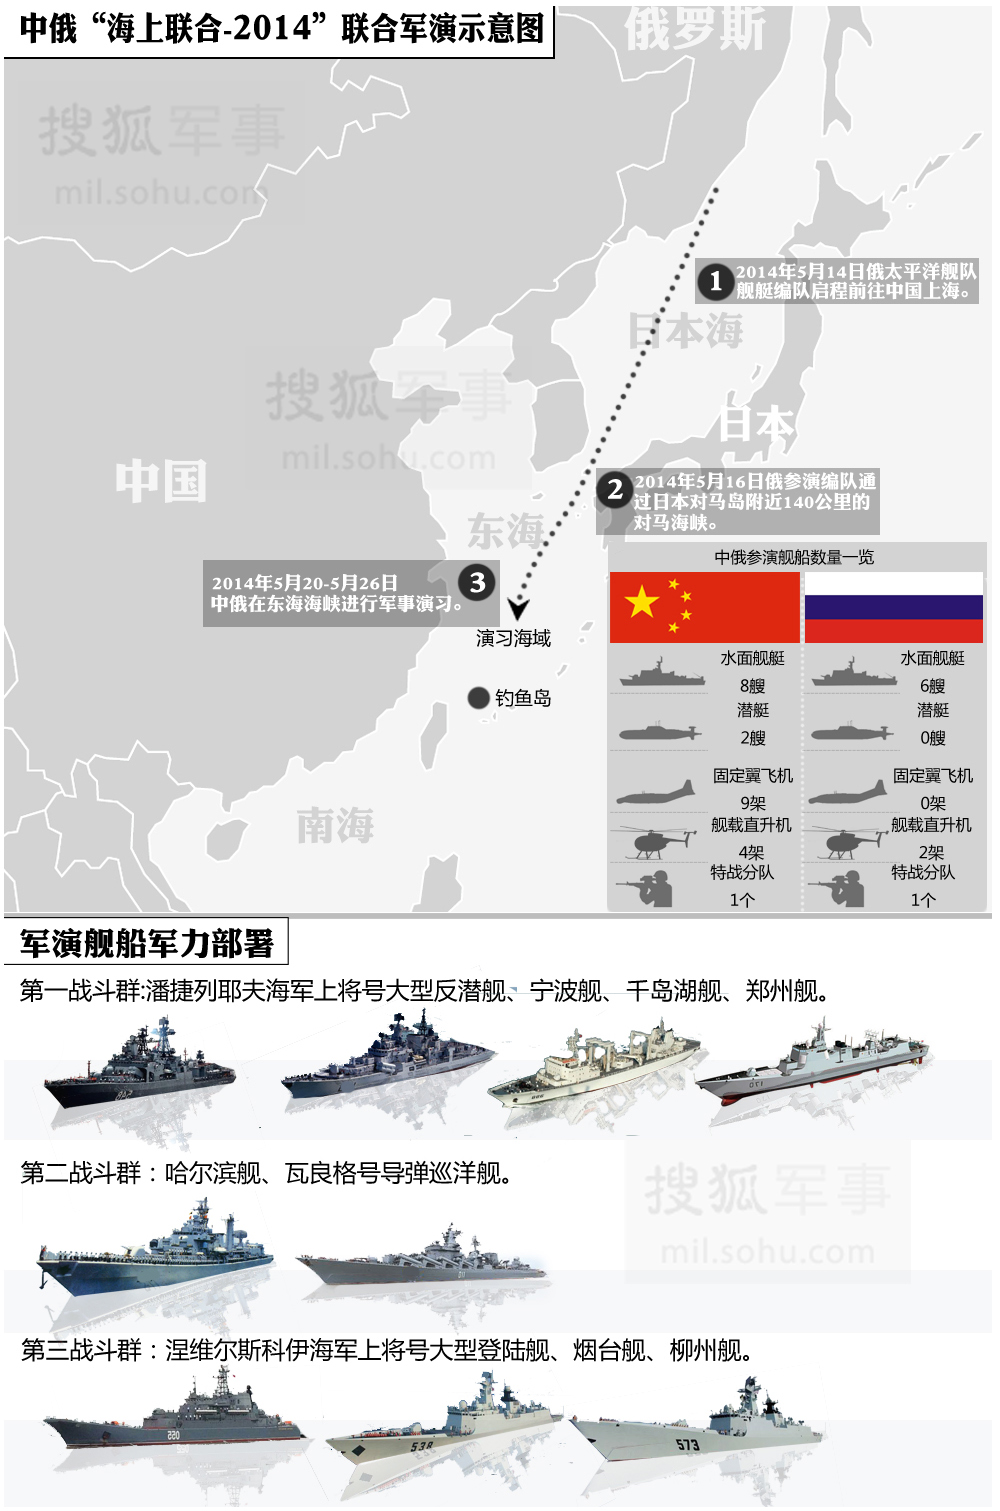 军事专题725期:2014中俄联合军演